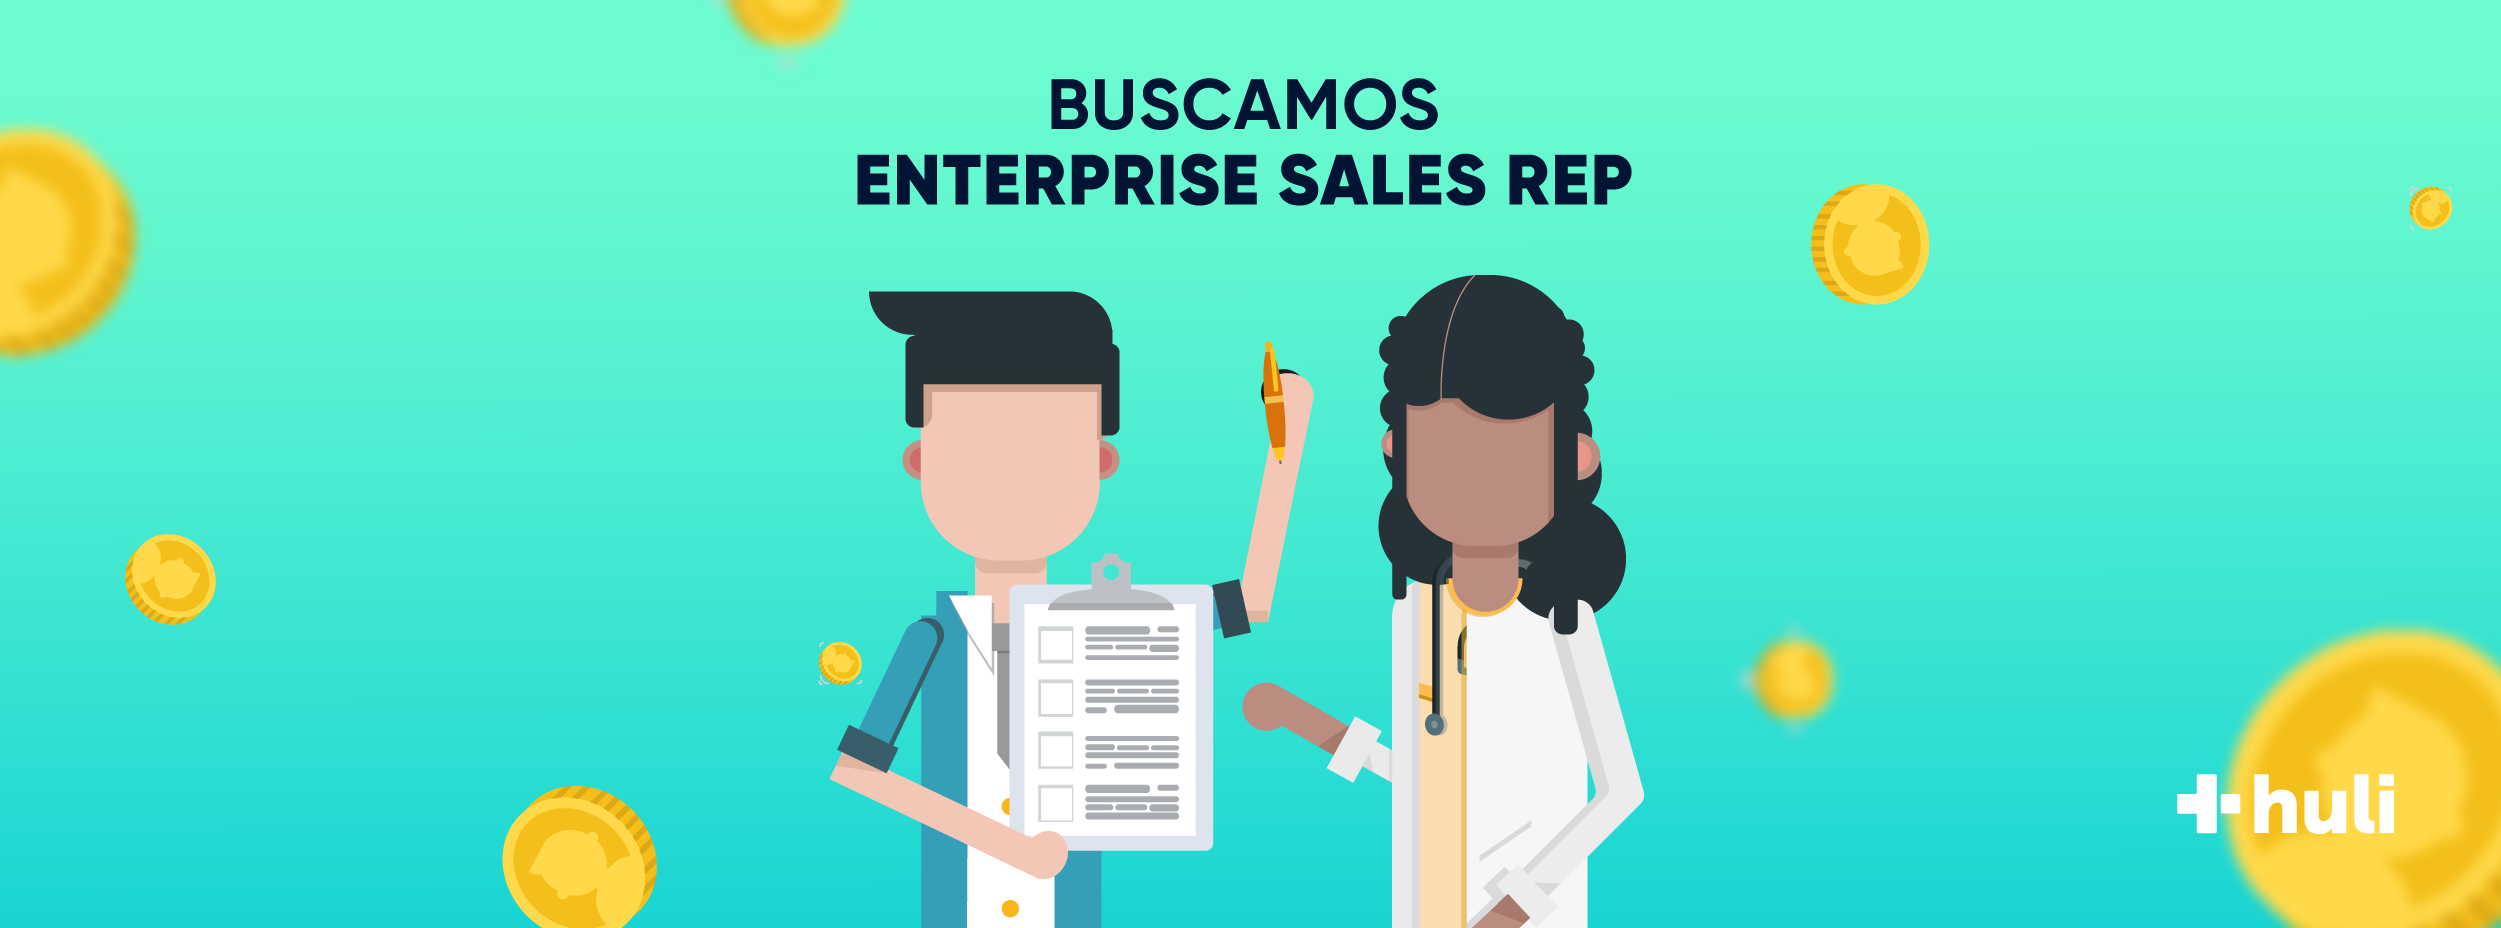 Estamos contratando Enterprise Sales REP